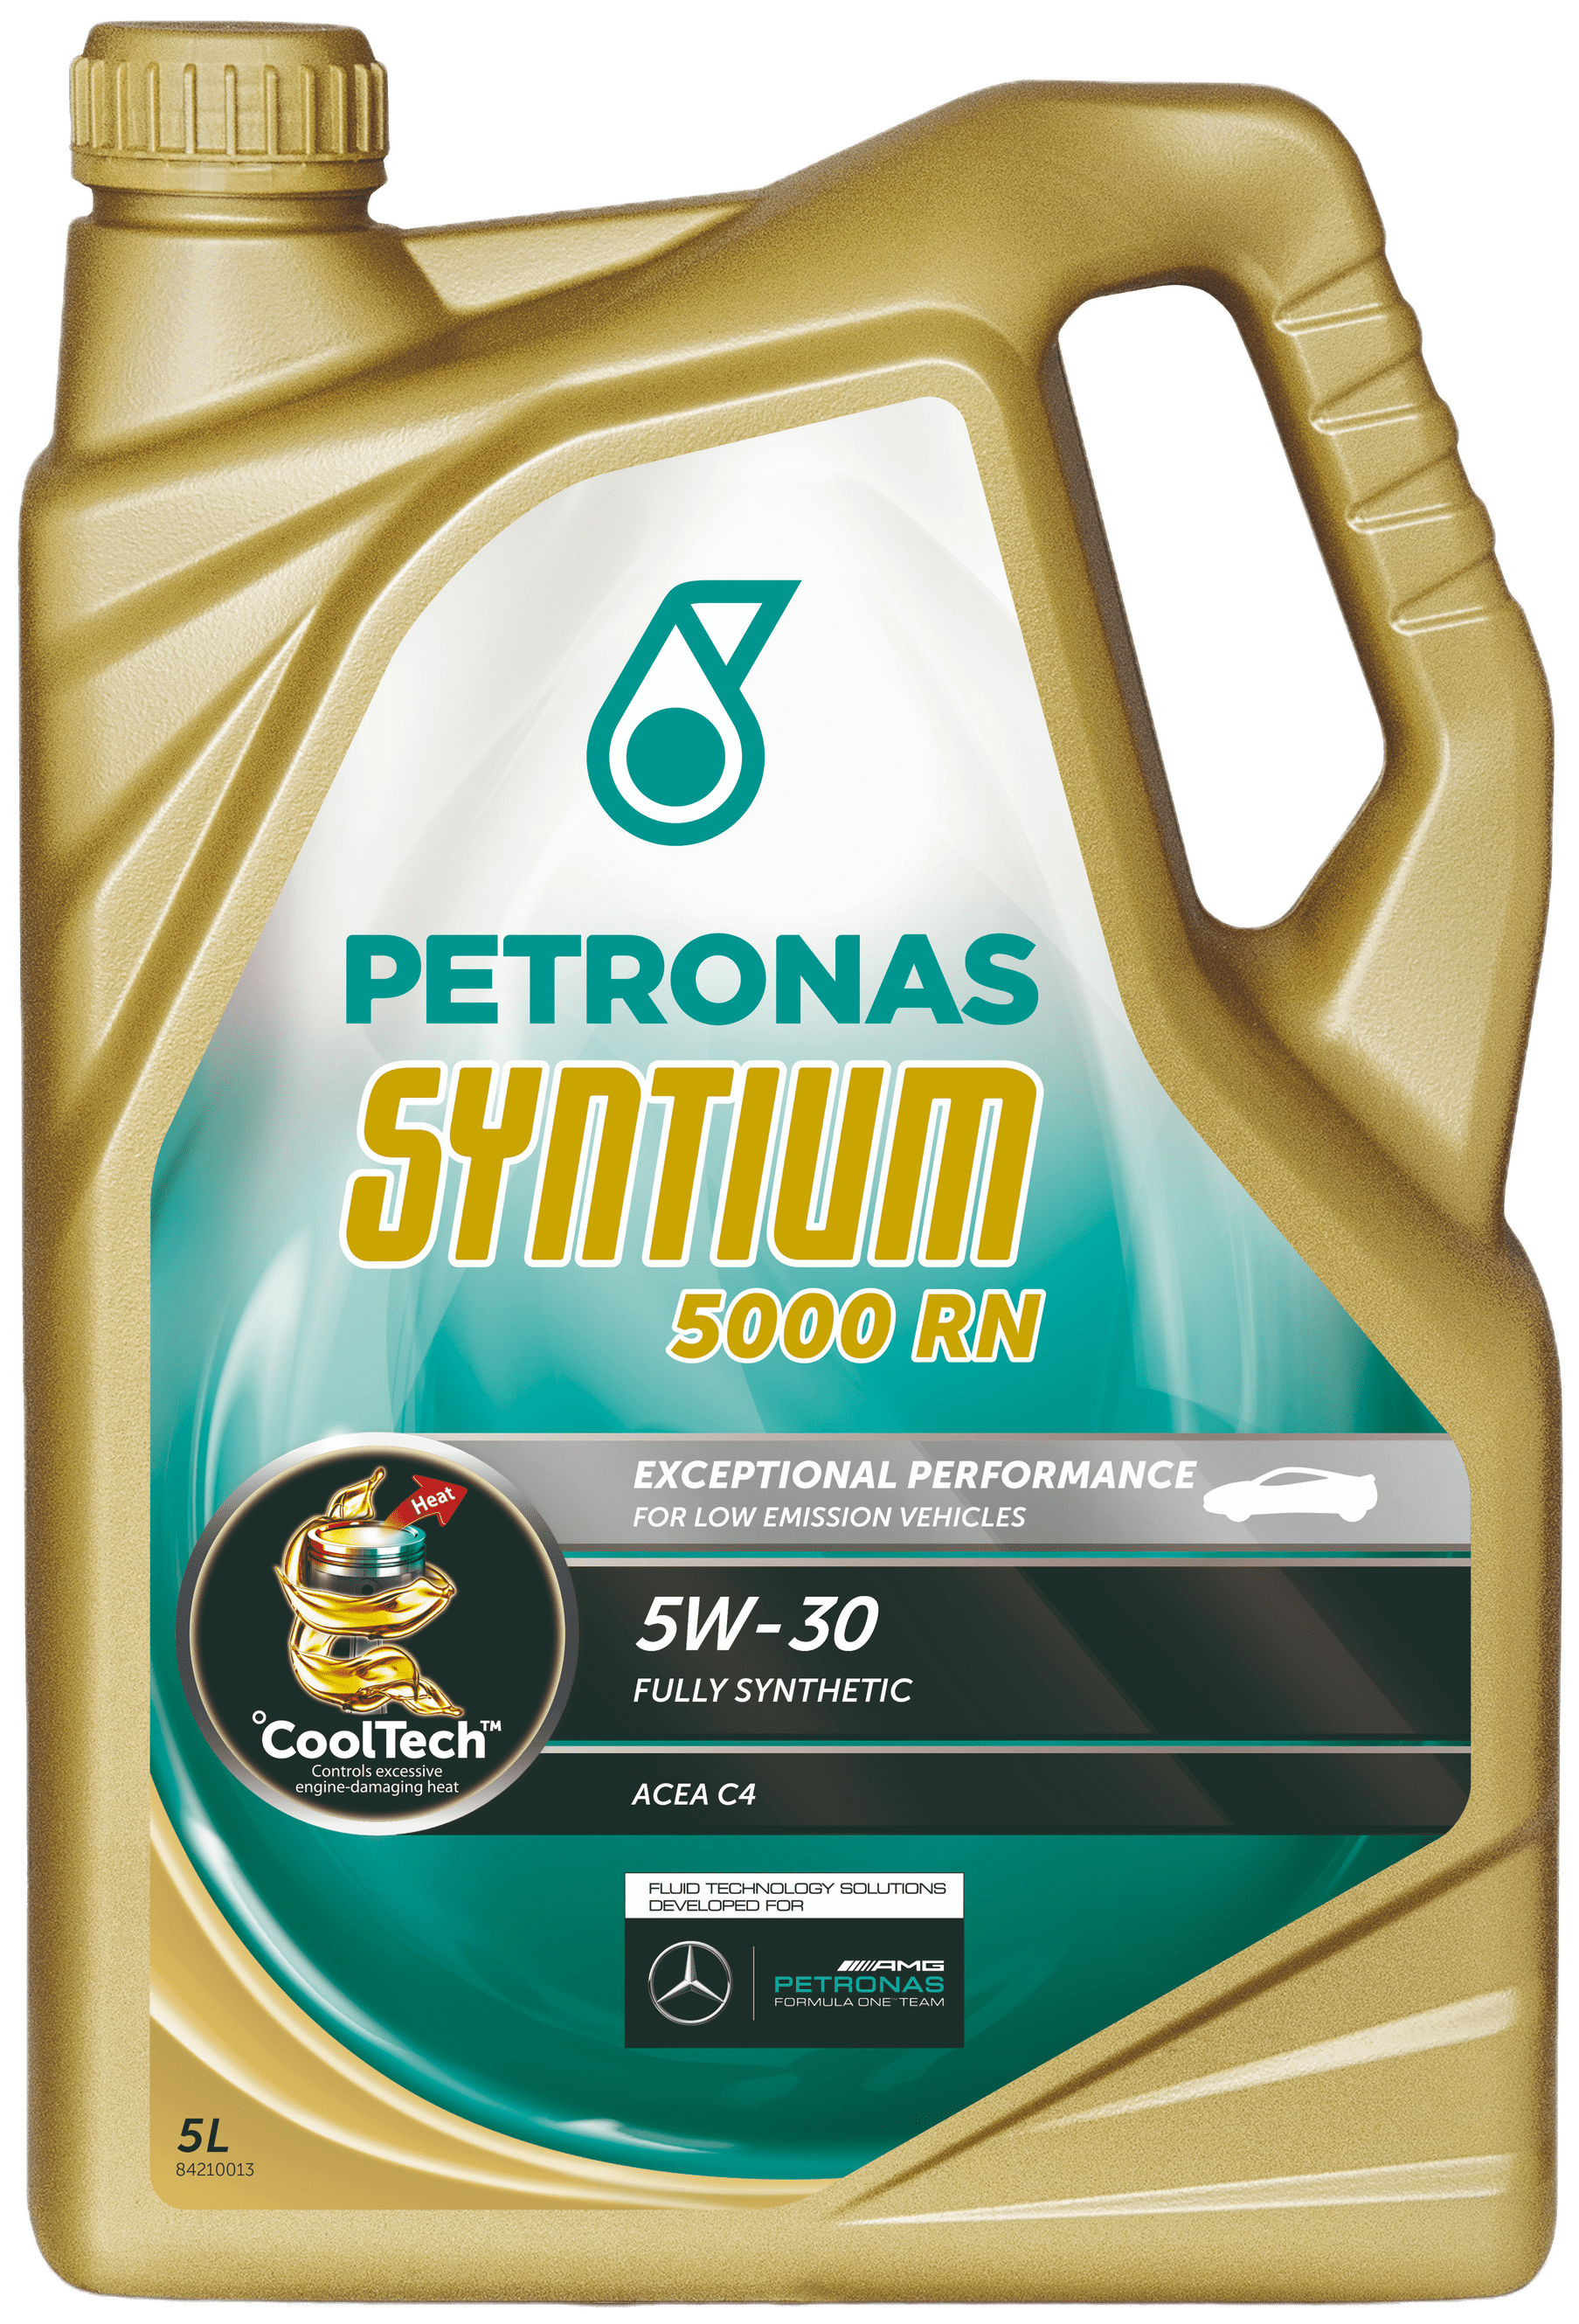 Petronas Syntium 5000 RN 5W-30, 5 lt